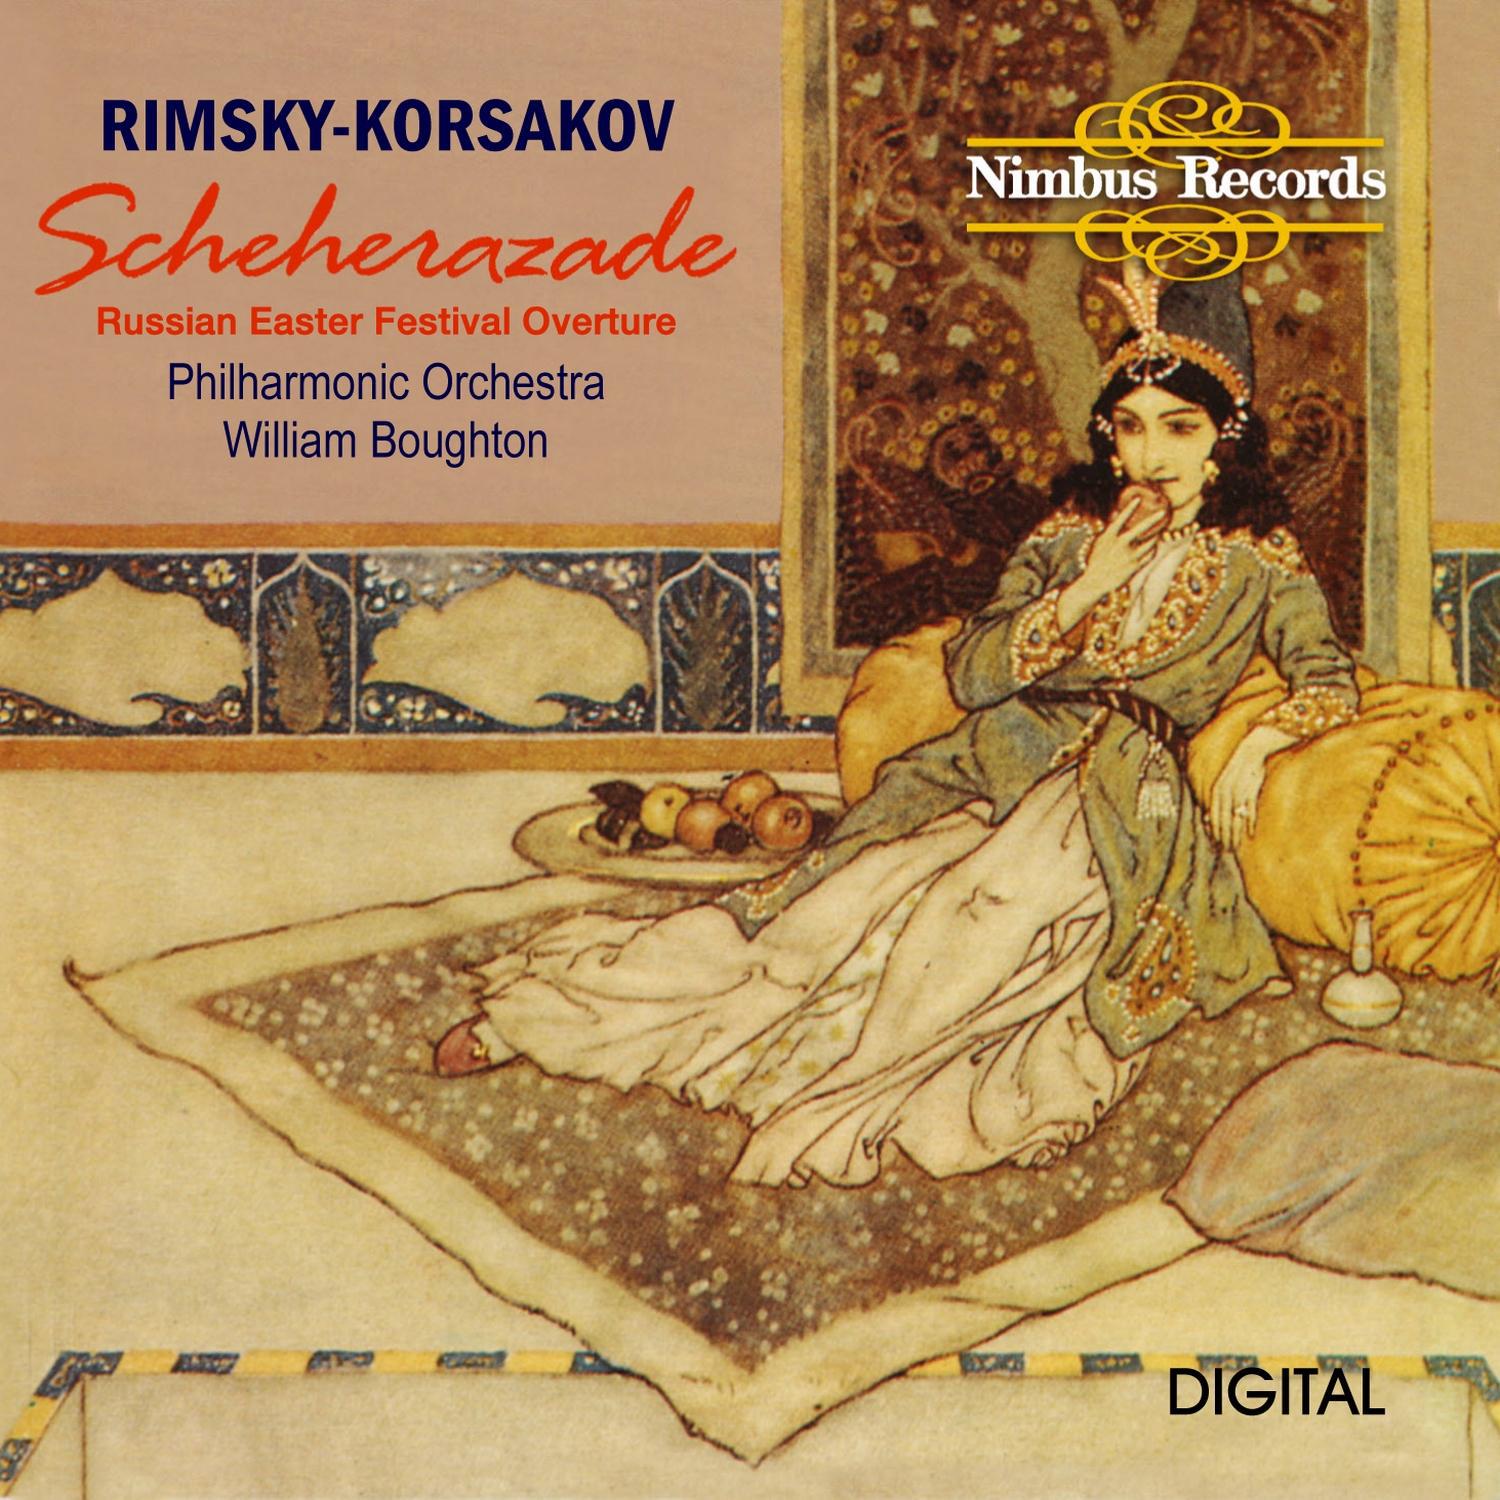 Scheherazade Symphonic Suite, Op. 35: IV. Allegro molto